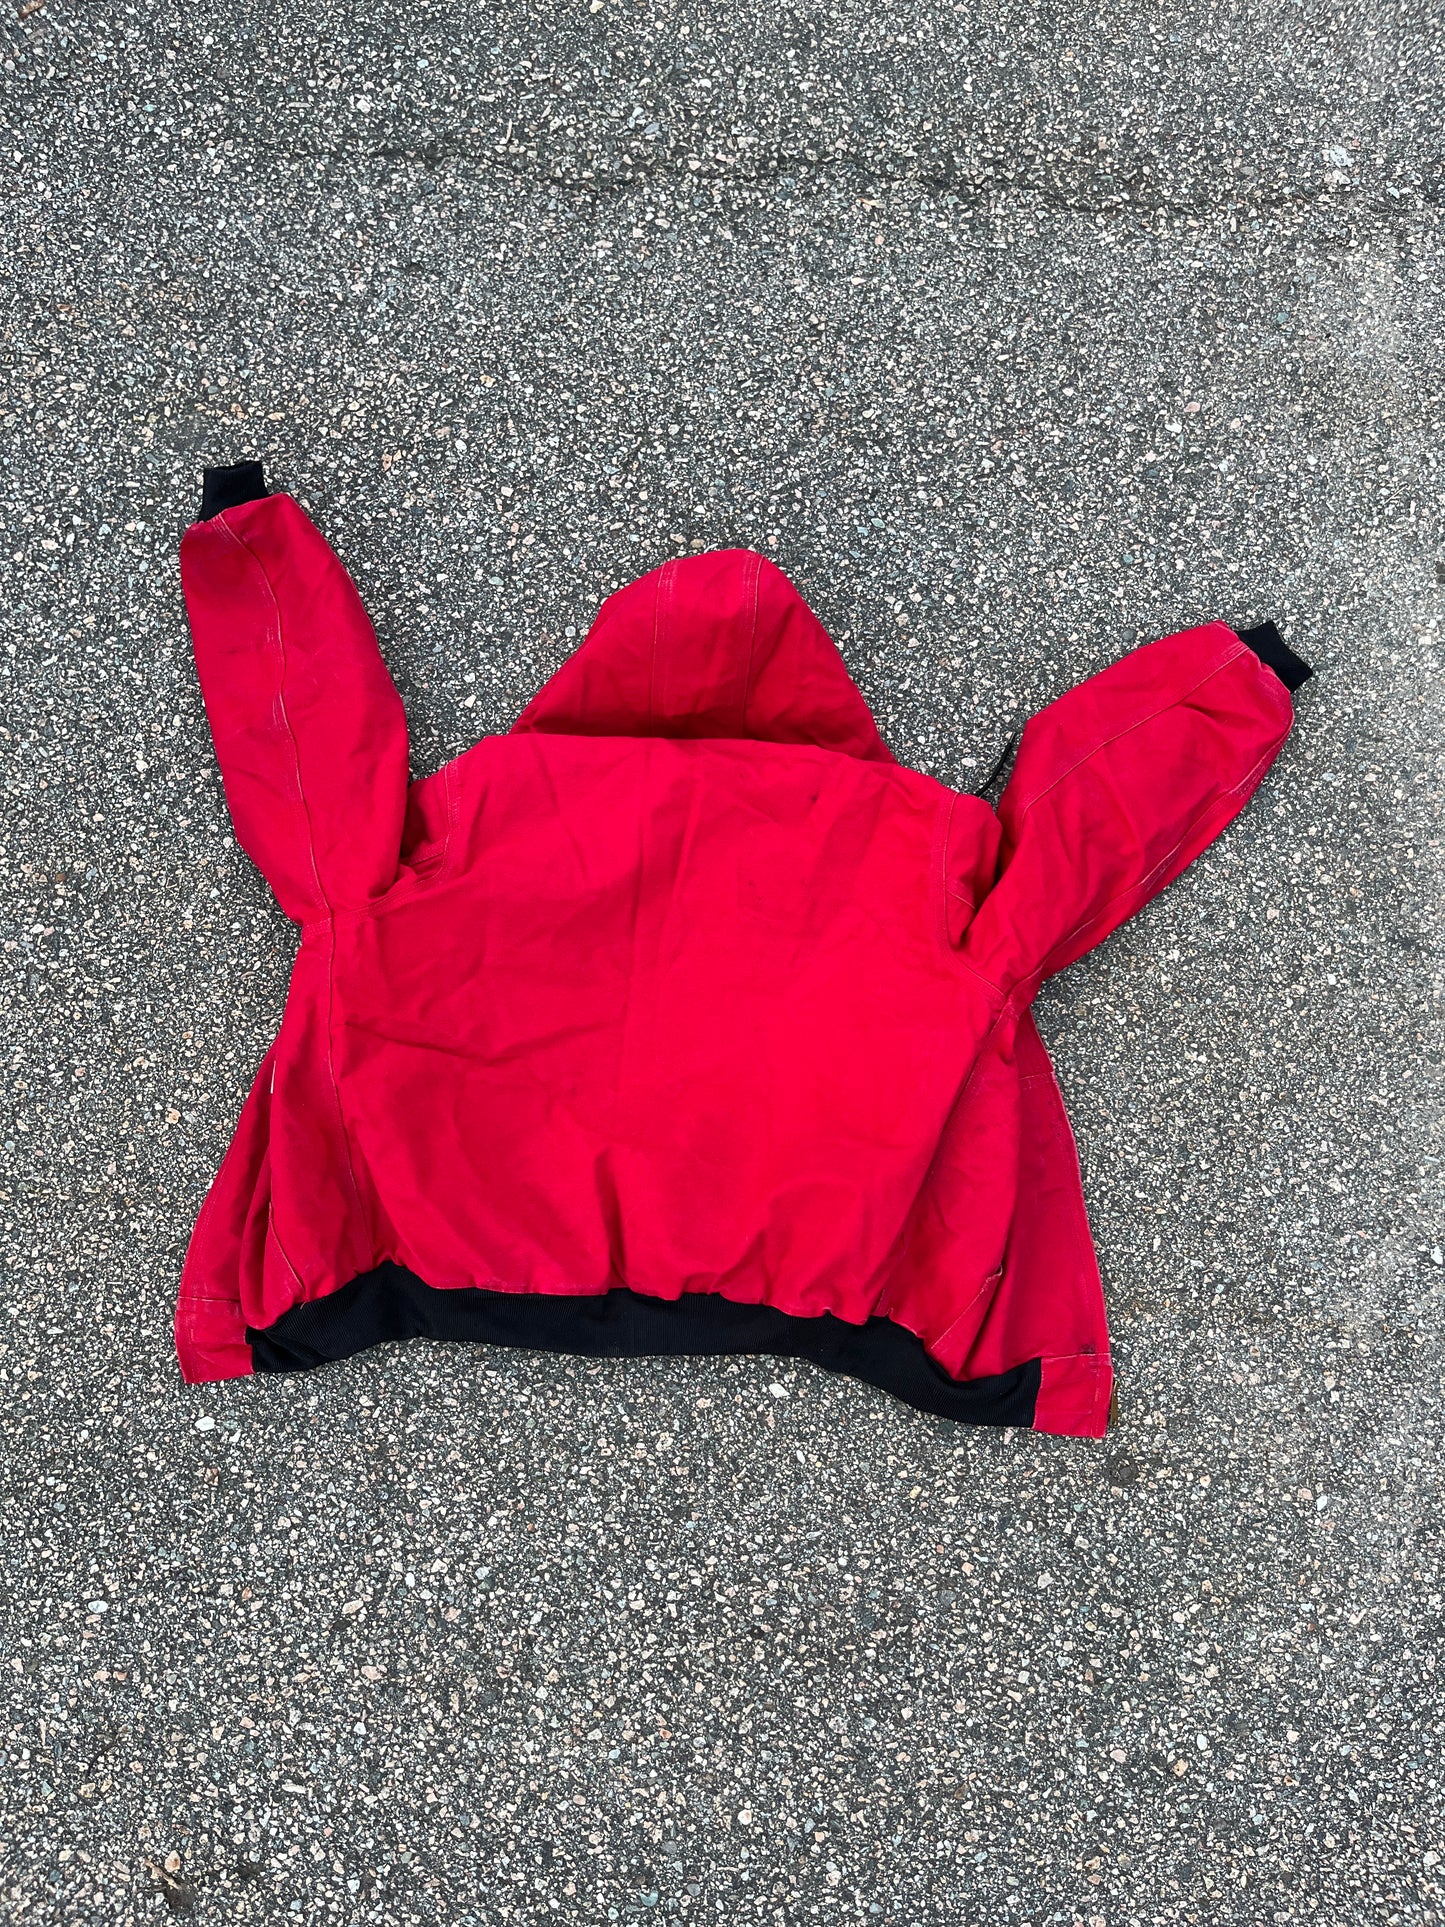 Faded Strawberry Red Carhartt Active Jacket - Boxy Medium